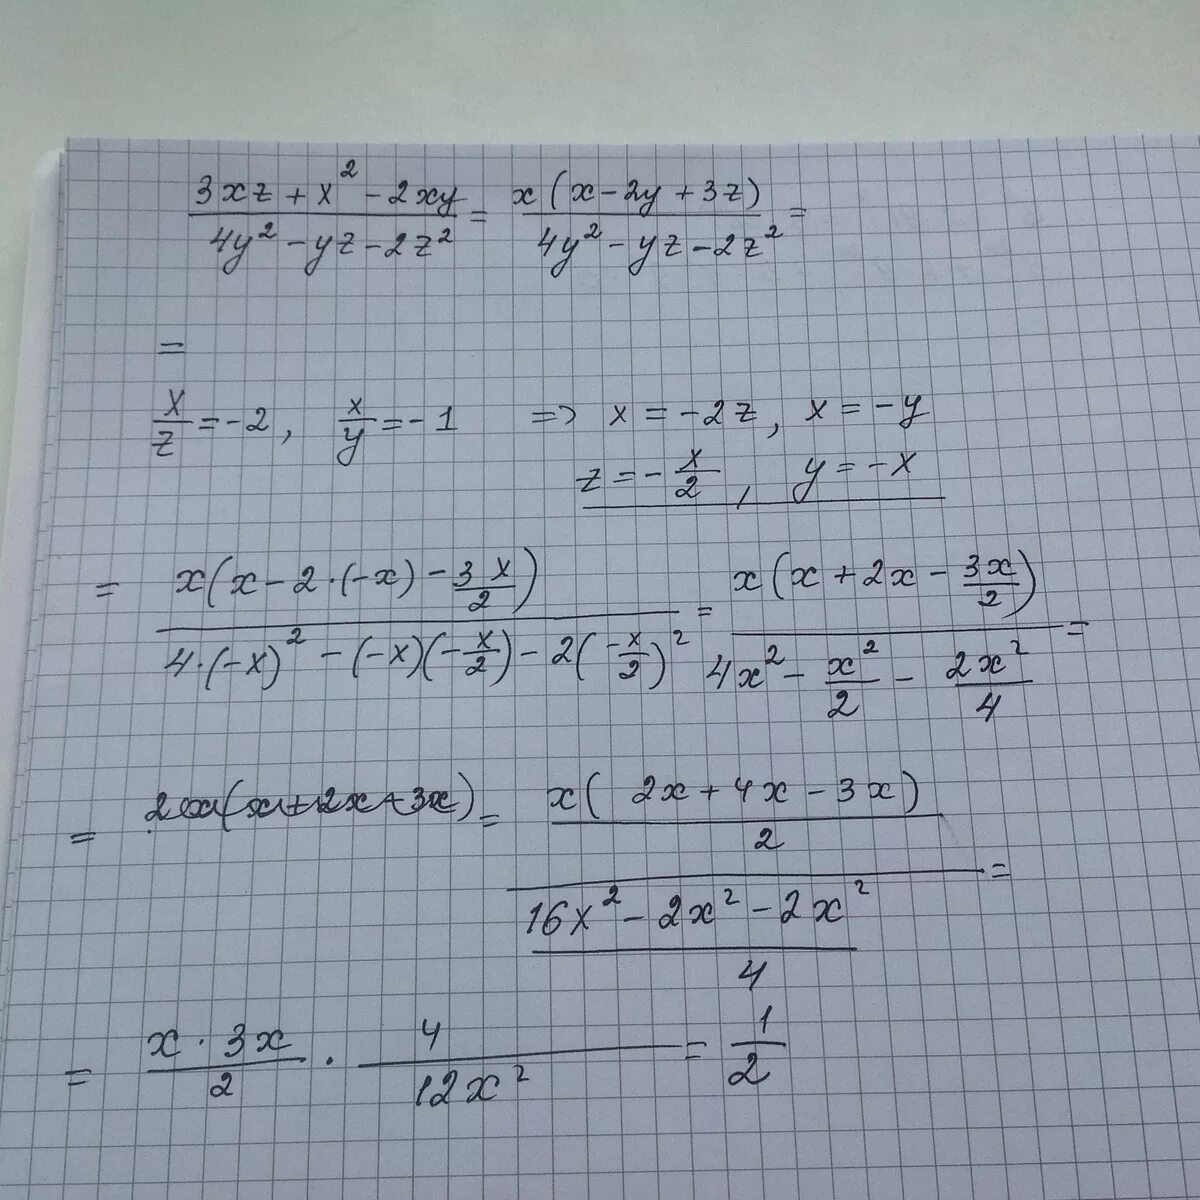 Вычисление значений дроби. У`- X^2 У = 2 XY. X/2-X/2 дроби. X2+XY+xy2+y3 решение. Z xy x y 3